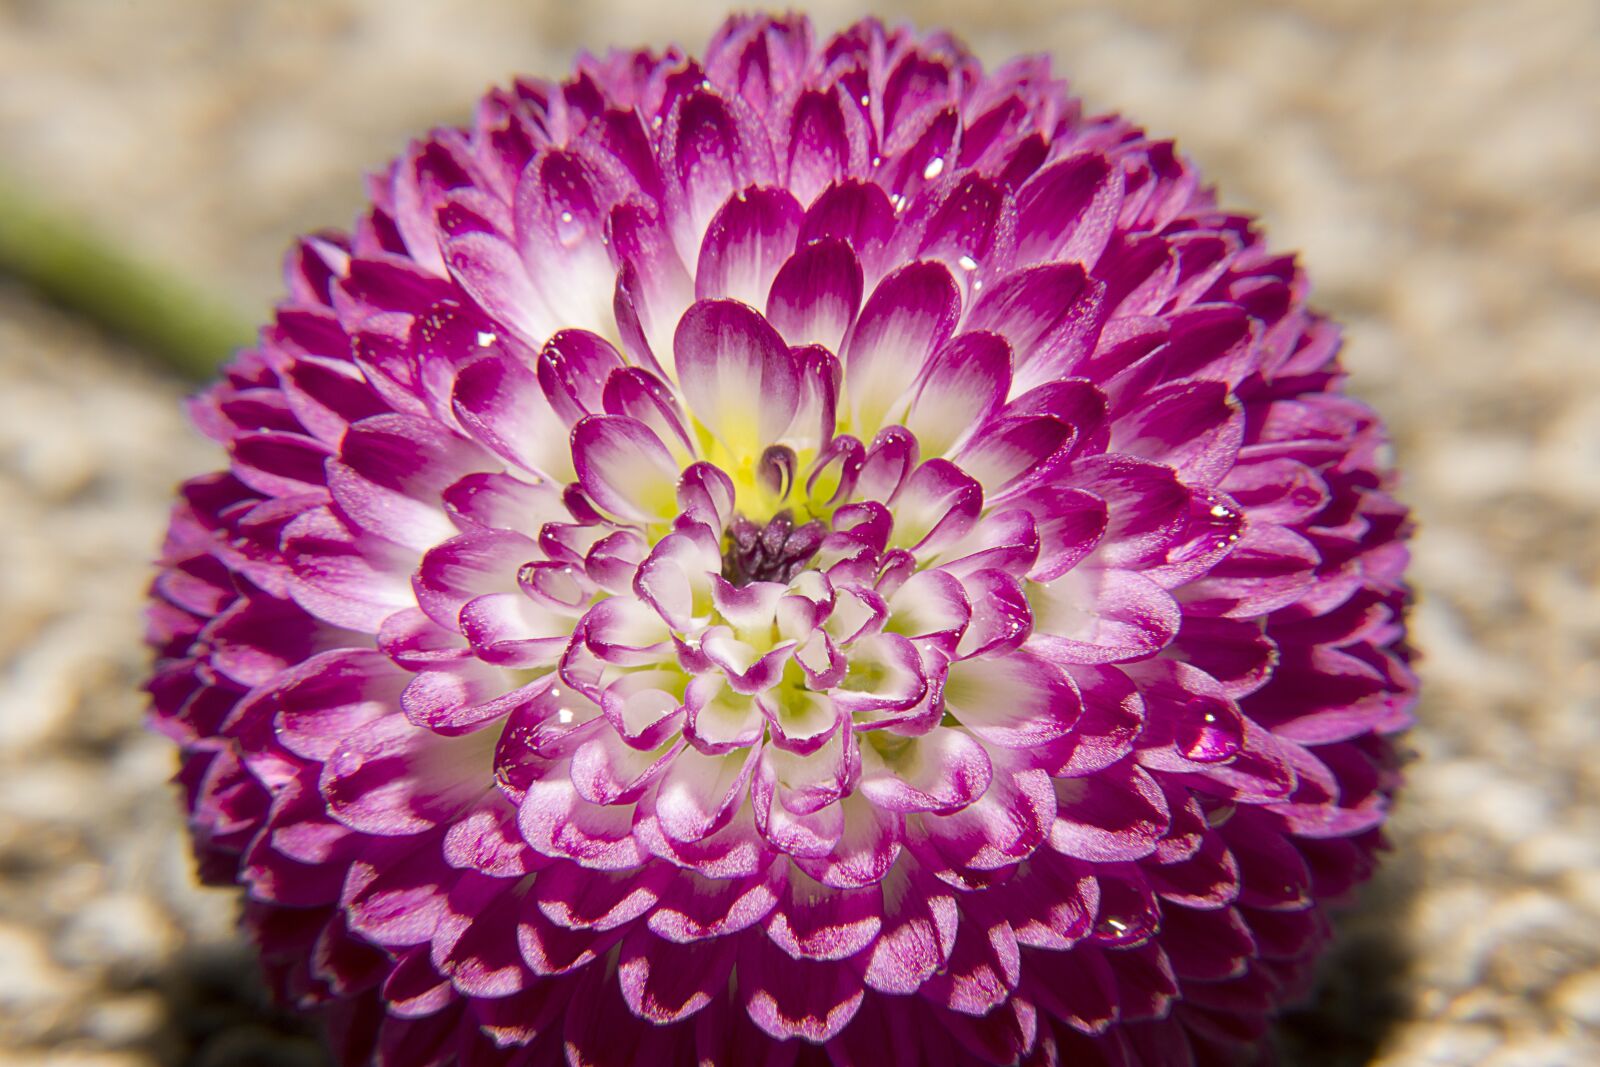 Nikon D5200 sample photo. Flowers, petals, pink photography